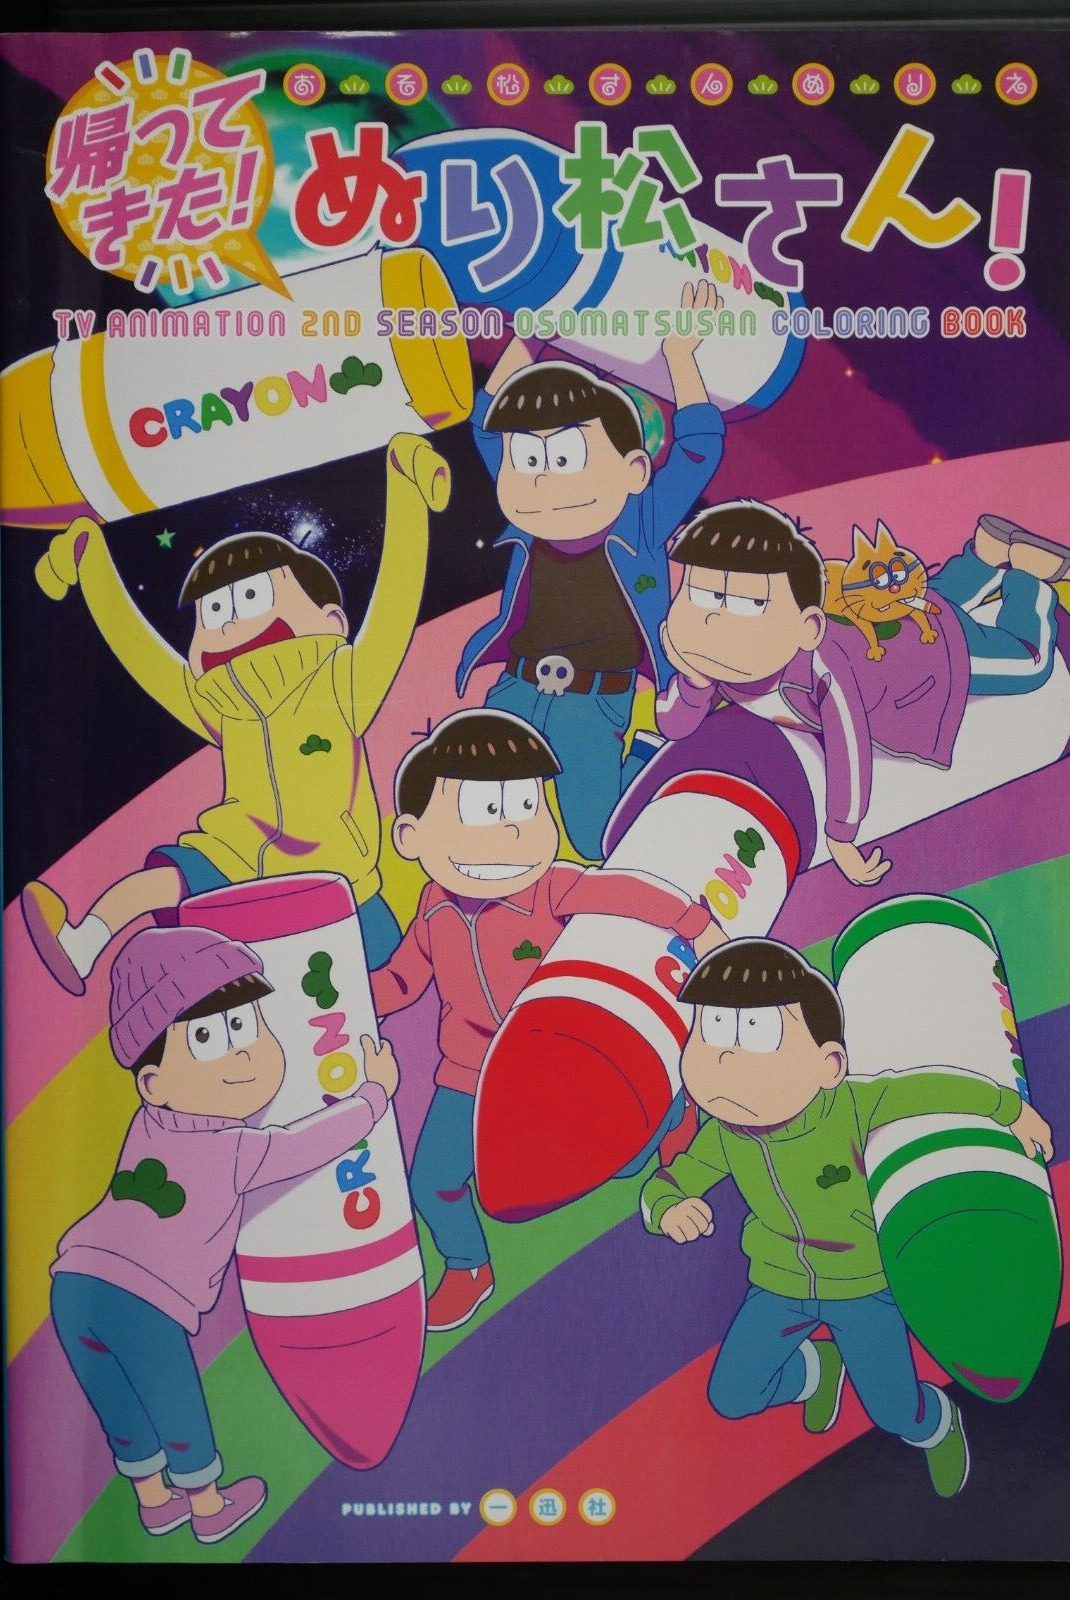 SHOHAN OOP: TV Animation 2nd Season Mr. Osomatsu / Osomatsusan Coloring Book